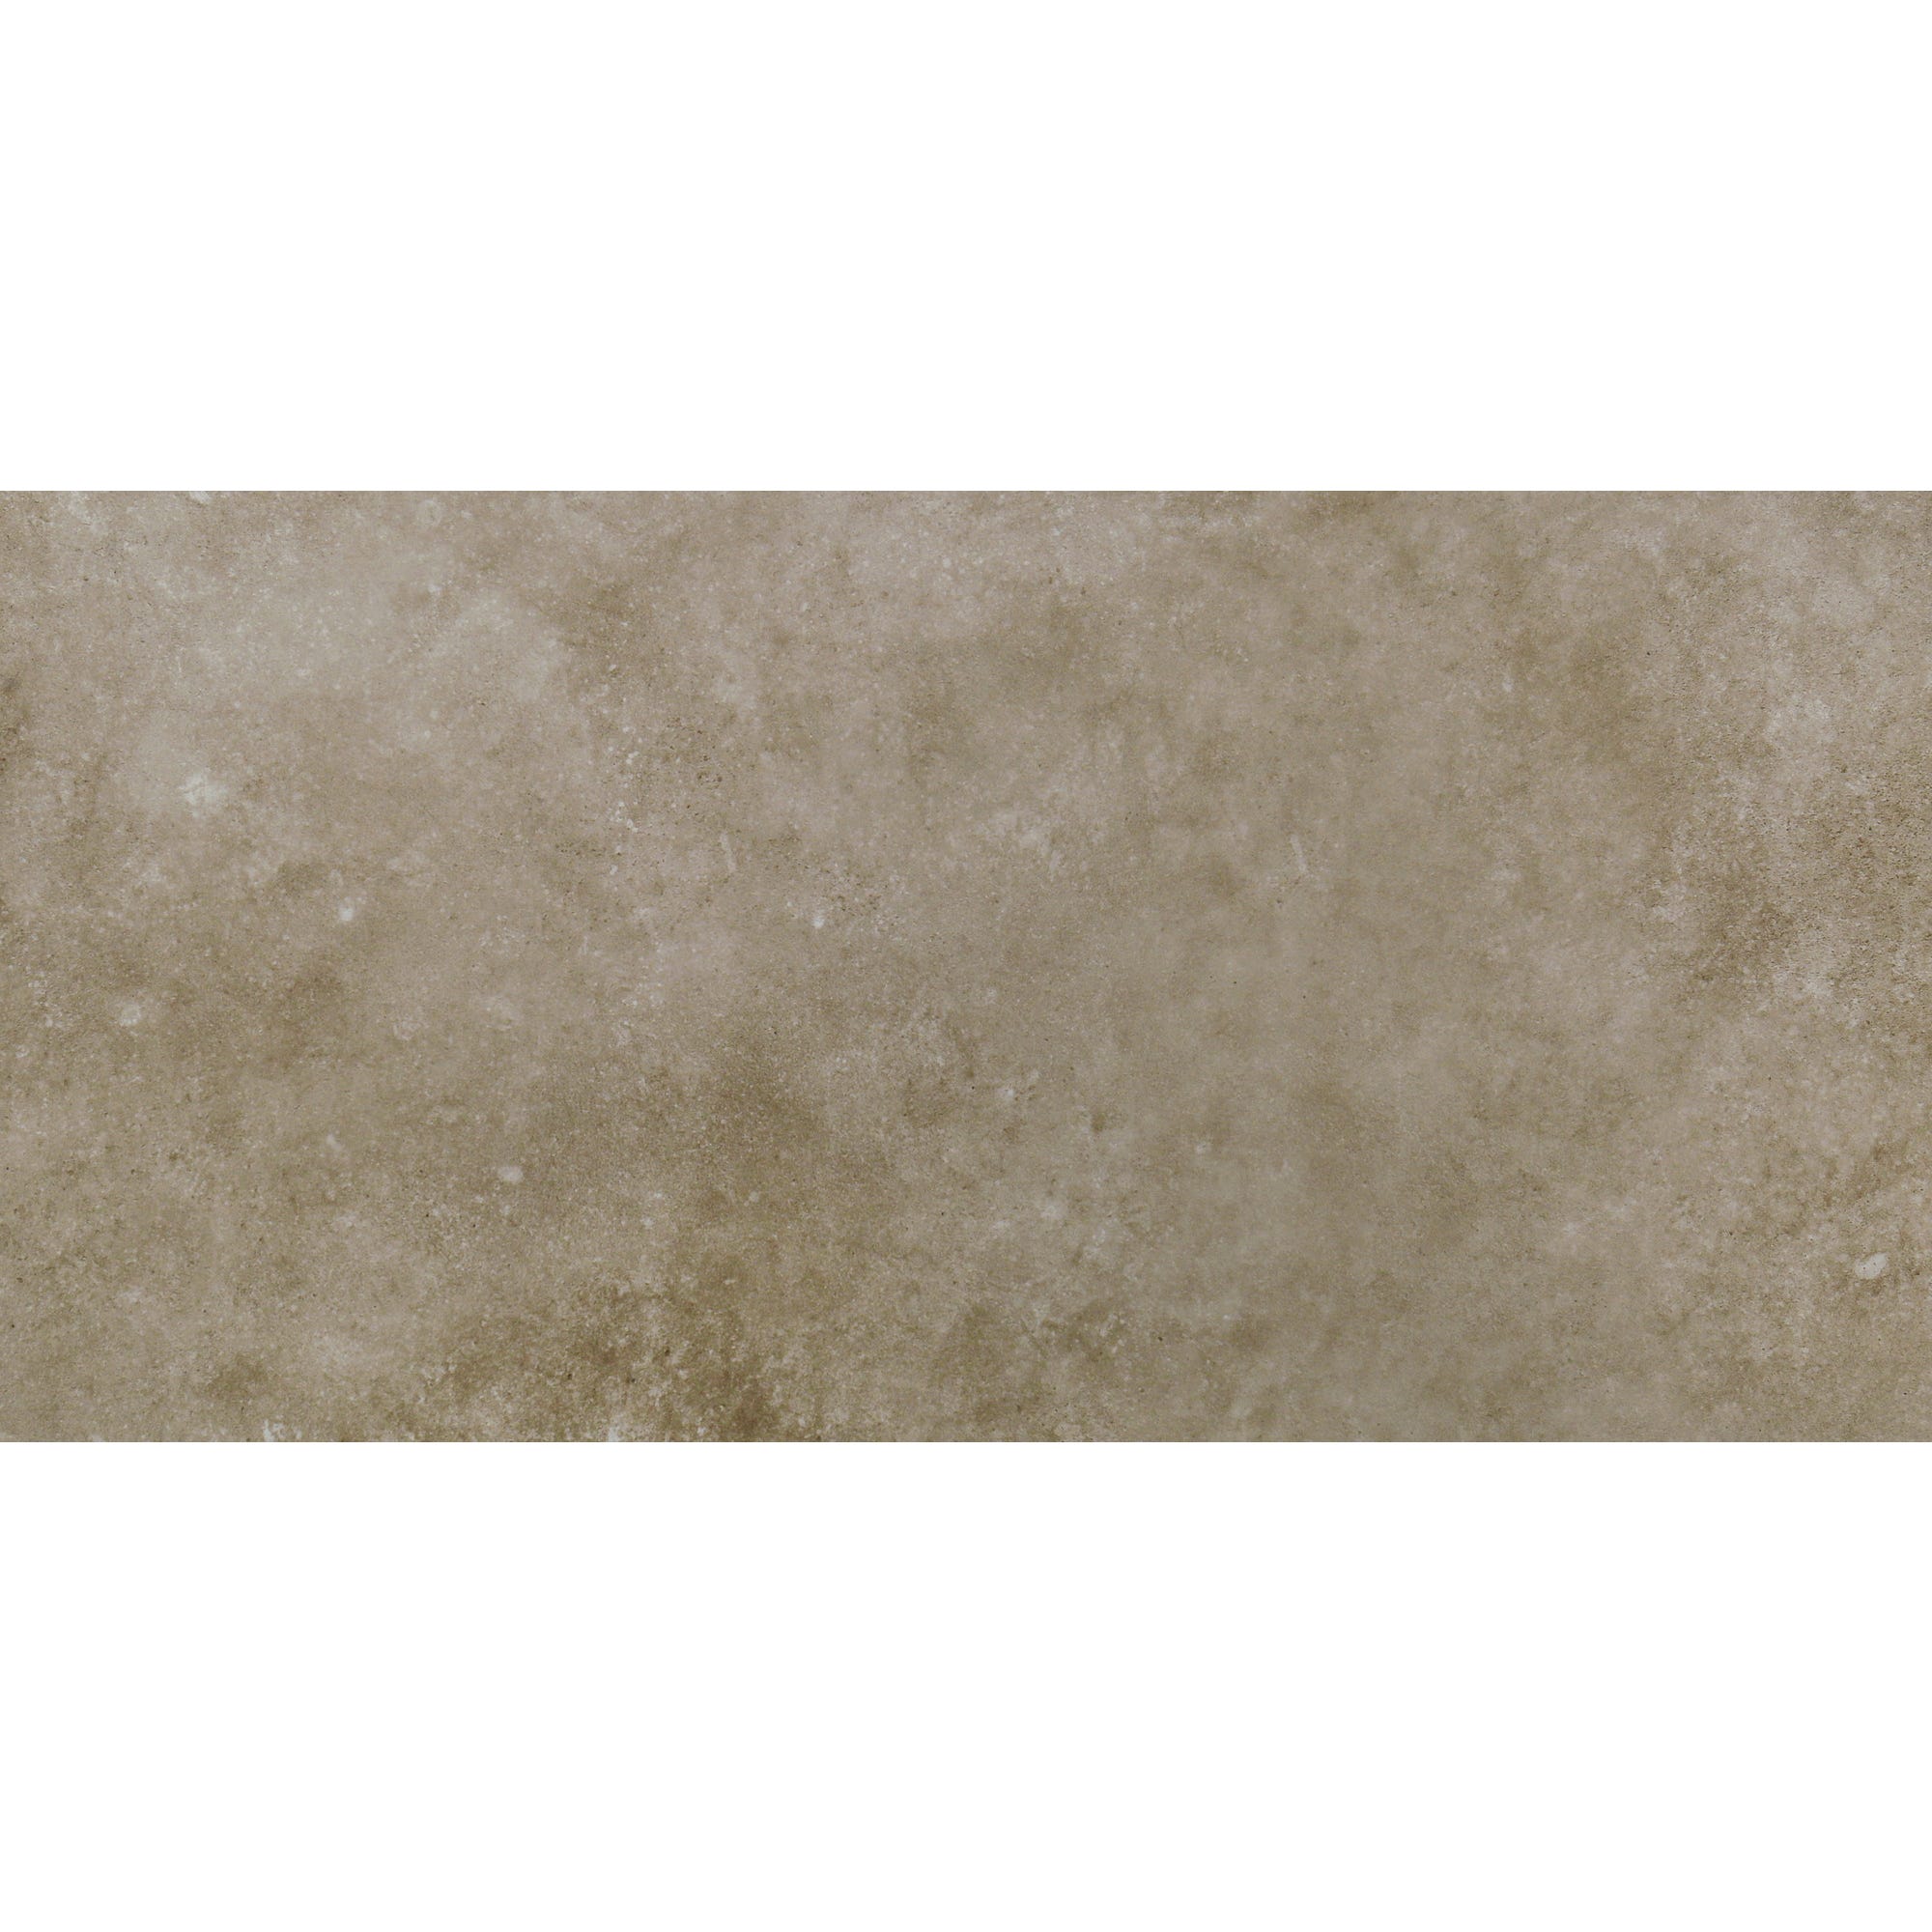 Dalle lvt pierre loft beige - colis 1.64m² 1